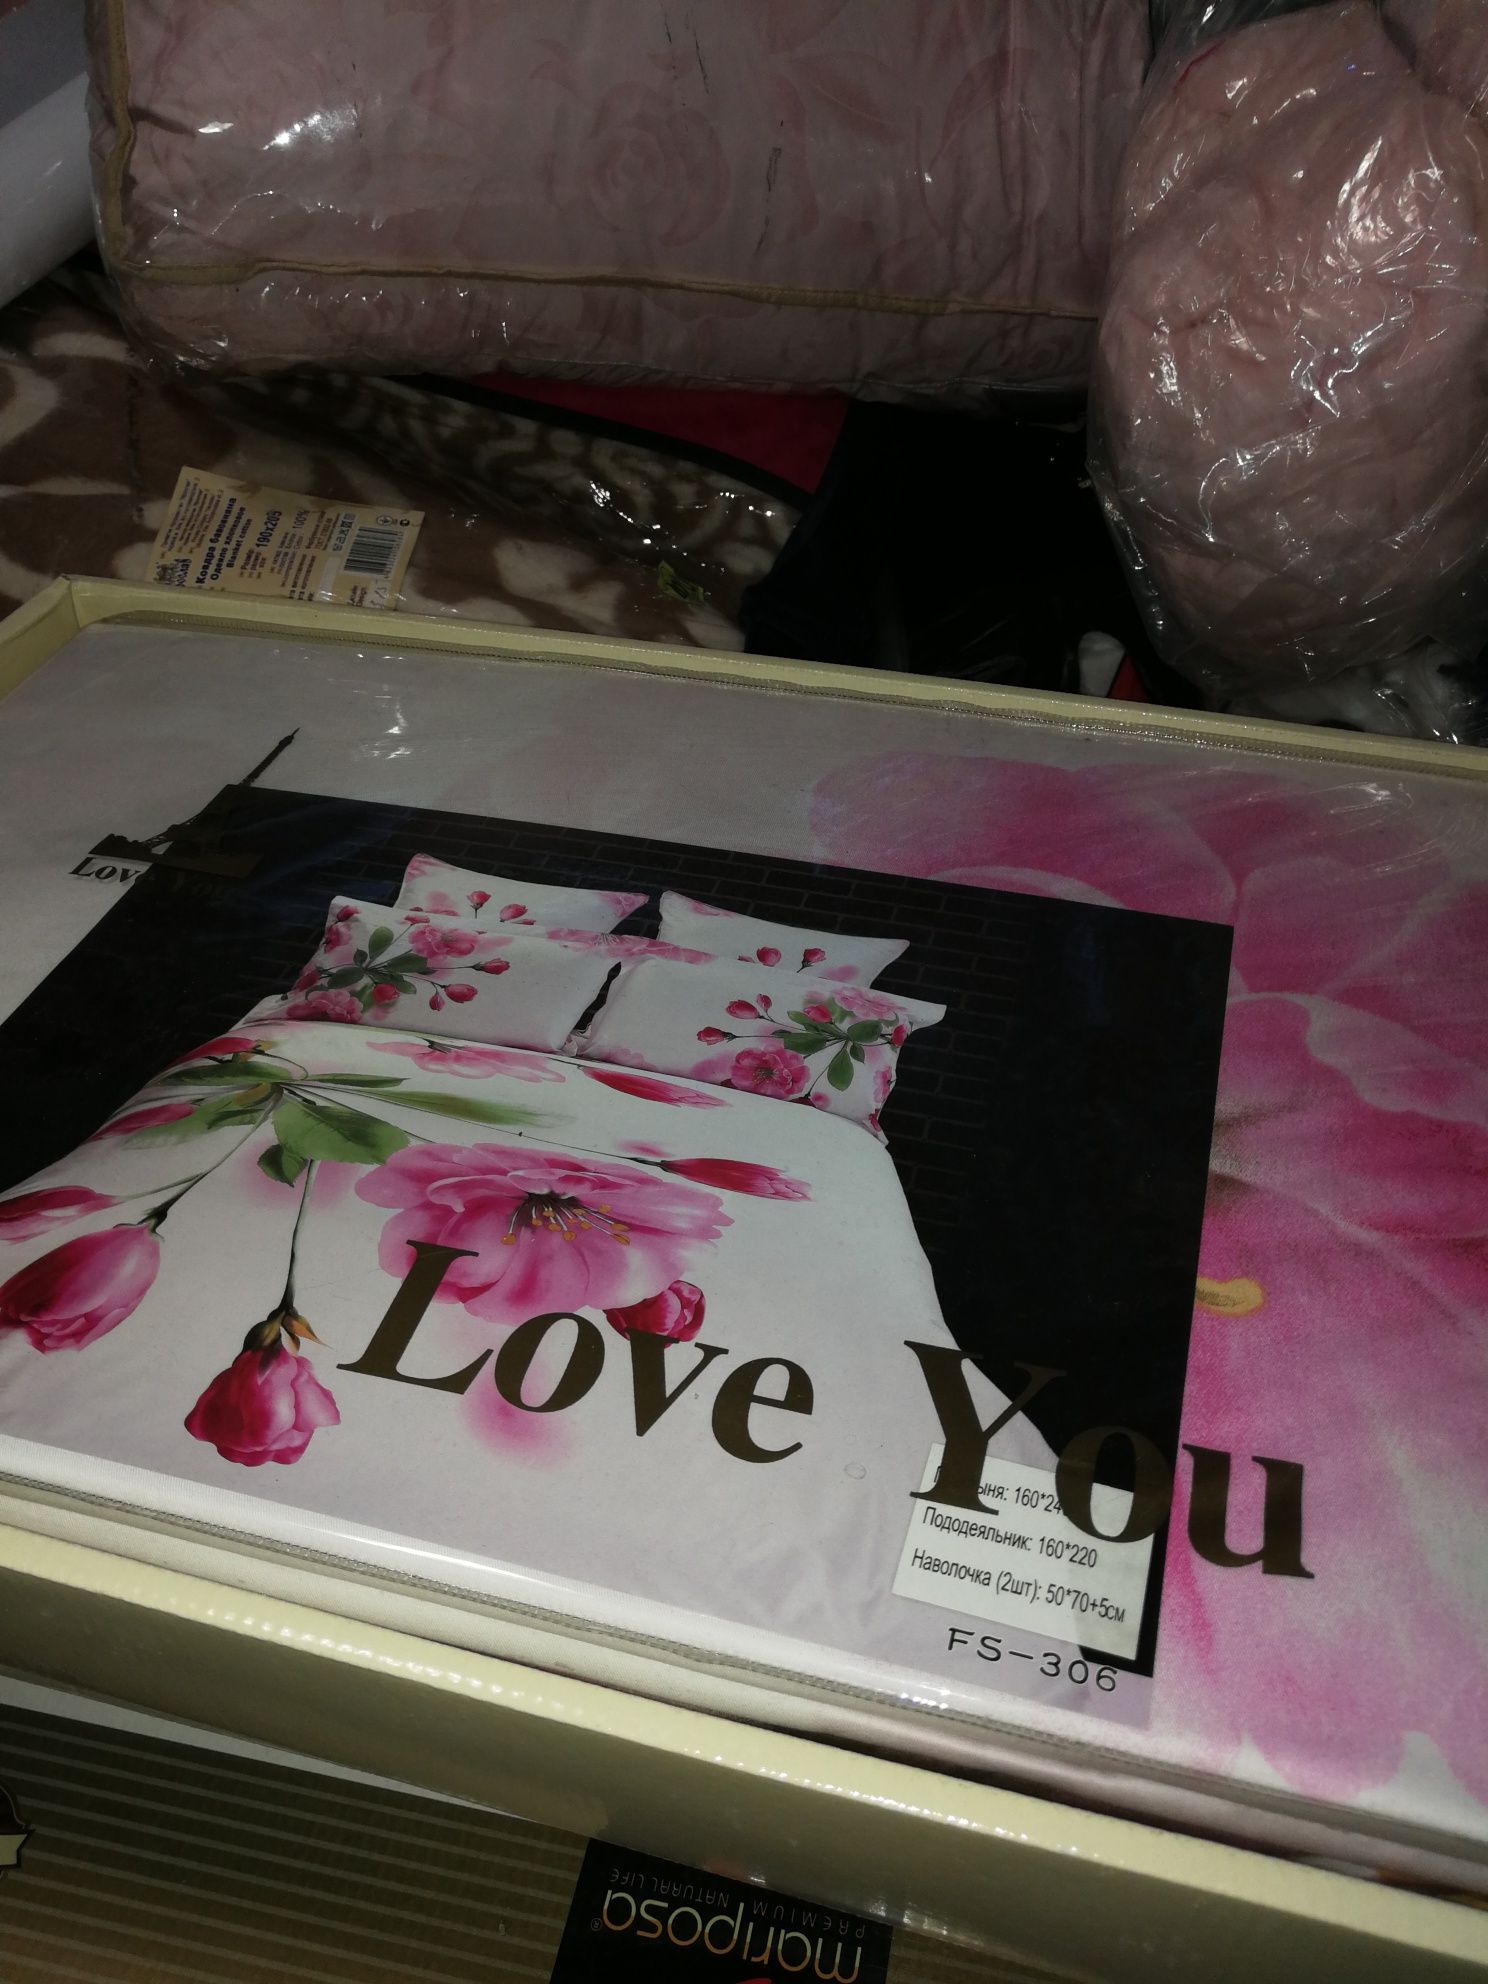 Постельный комплект "Love You" полуторный сатин. Подарок на праздник